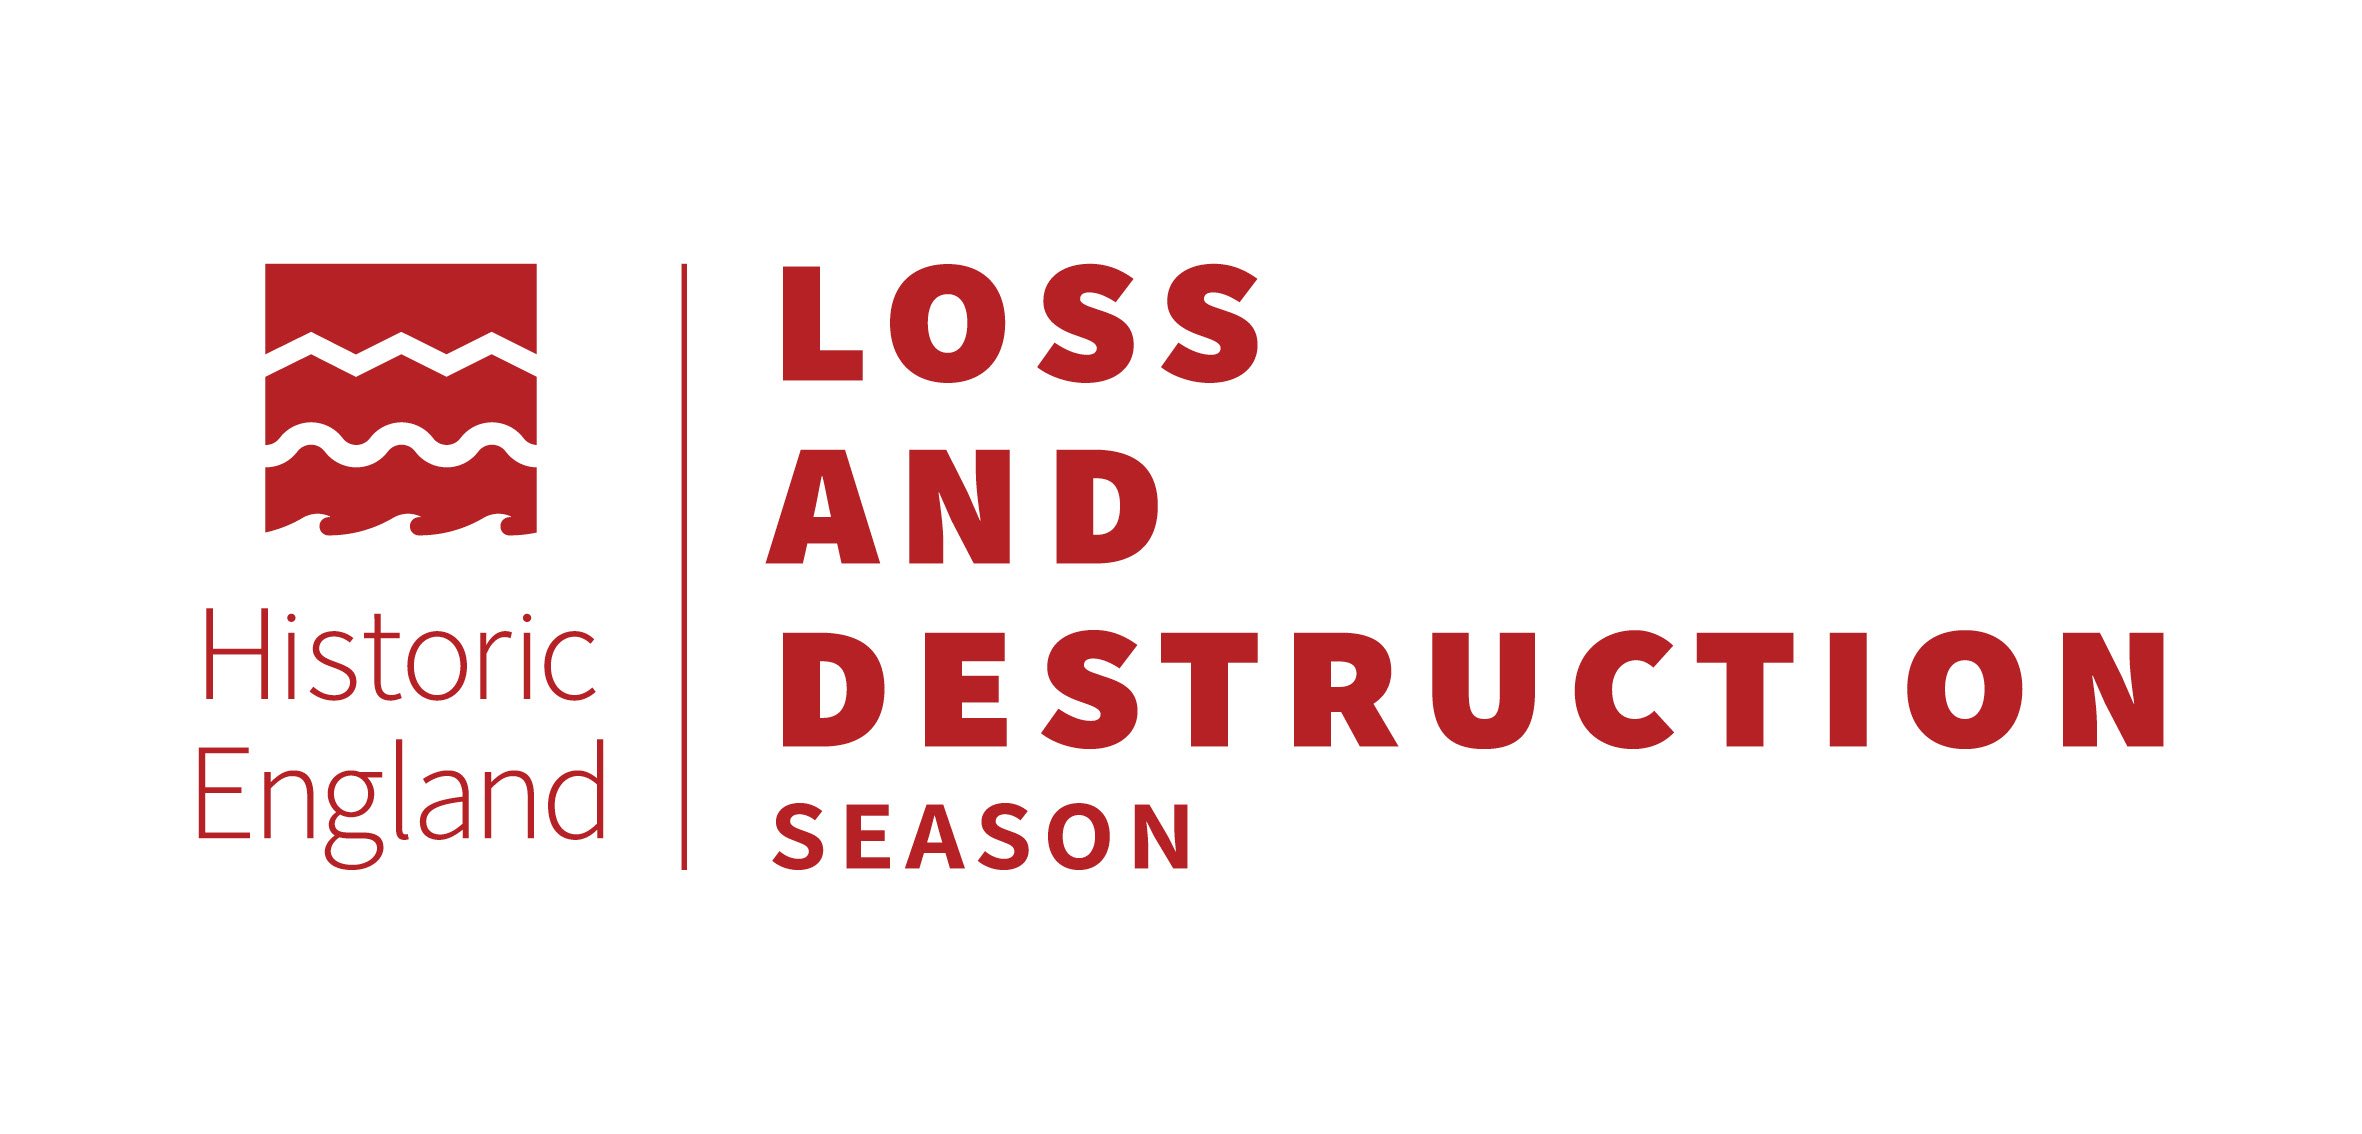 Loss and Destruction Season logo